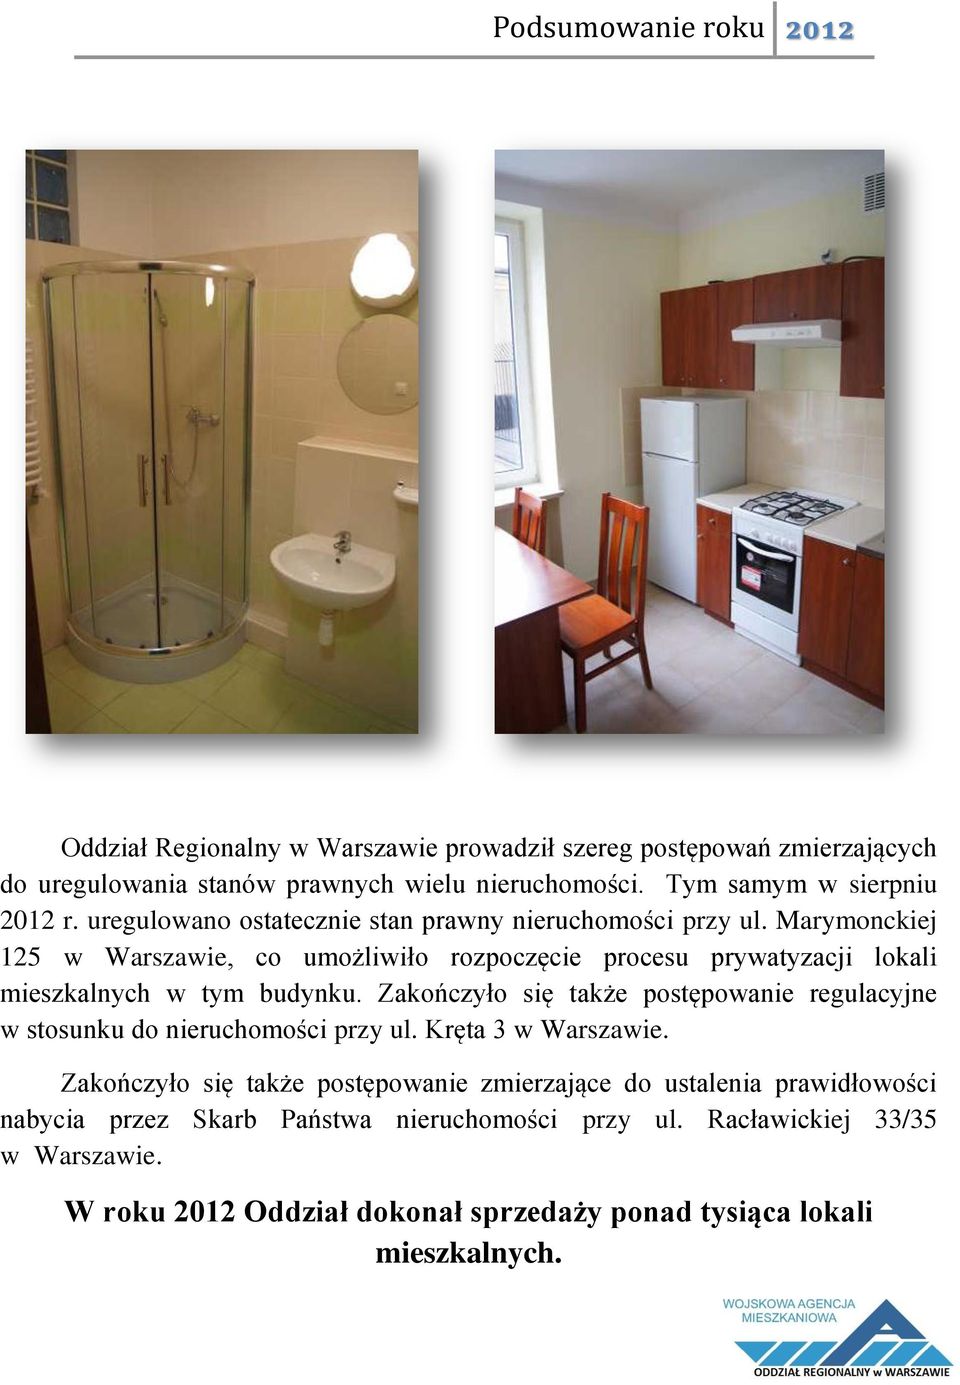 Marymonckiej 125 w Warszawie, co umożliwiło rozpoczęcie procesu prywatyzacji lokali mieszkalnych w tym budynku.